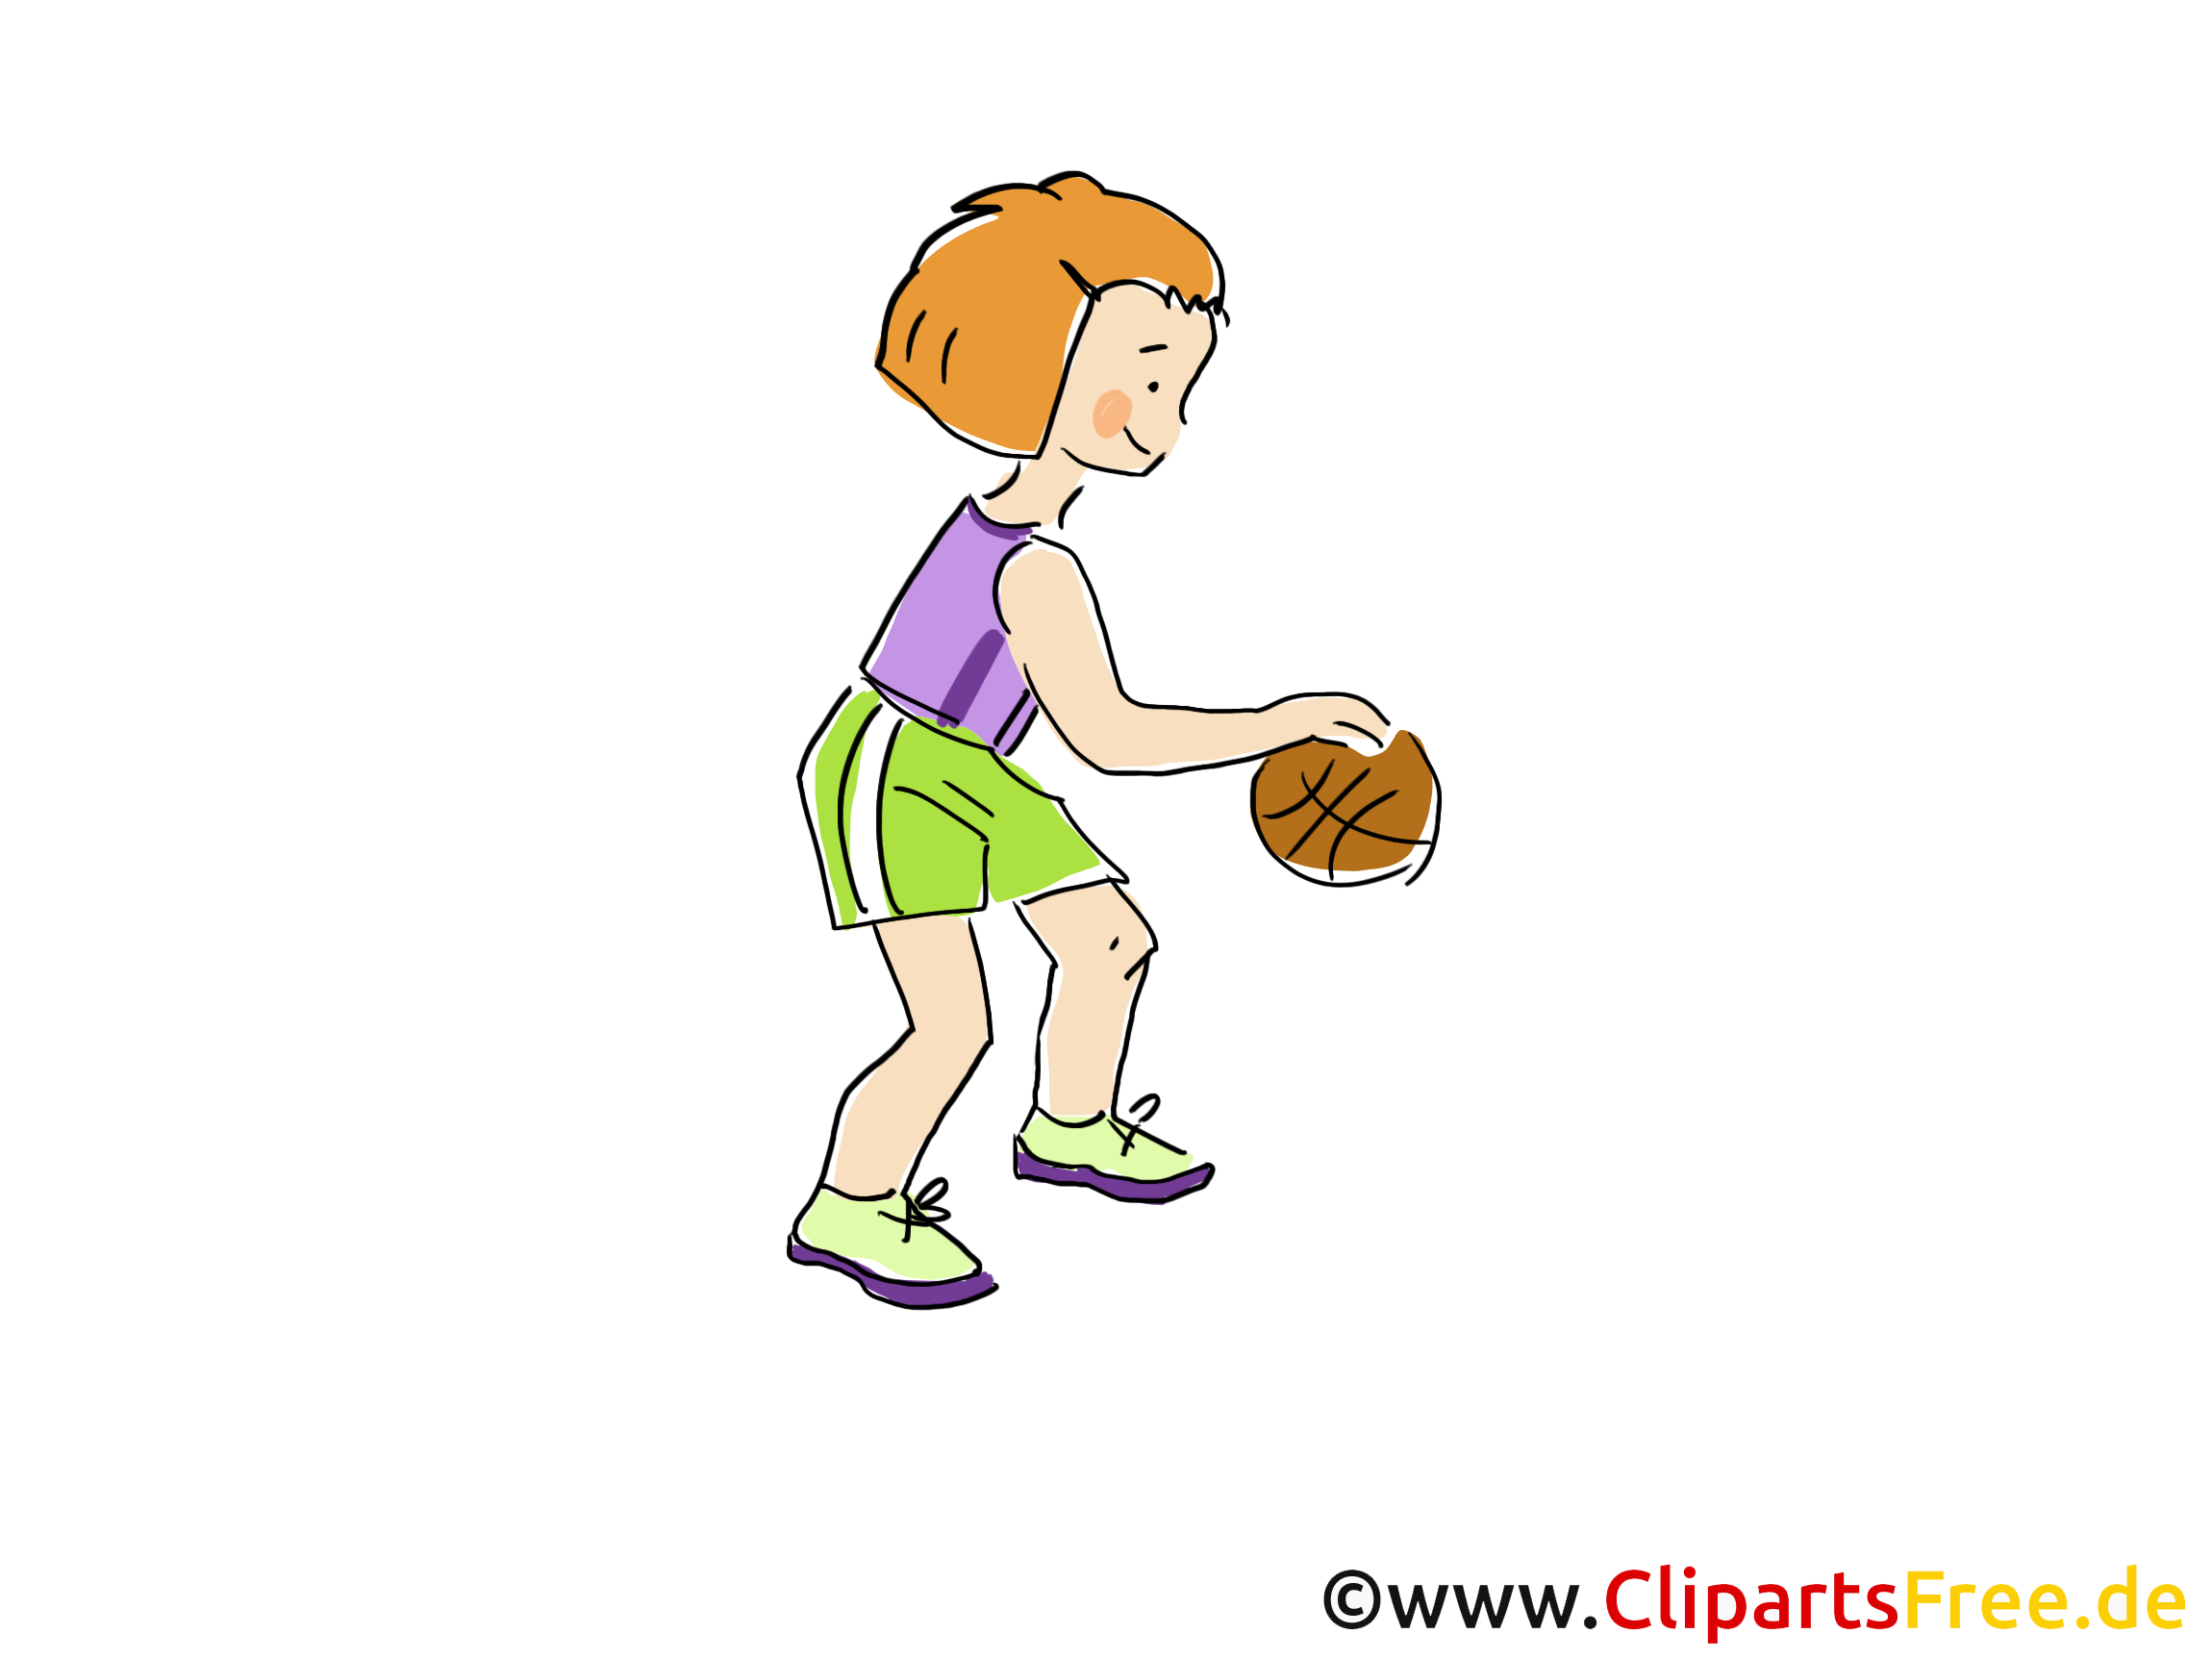 clipart sport telechargement gratuit - photo #26